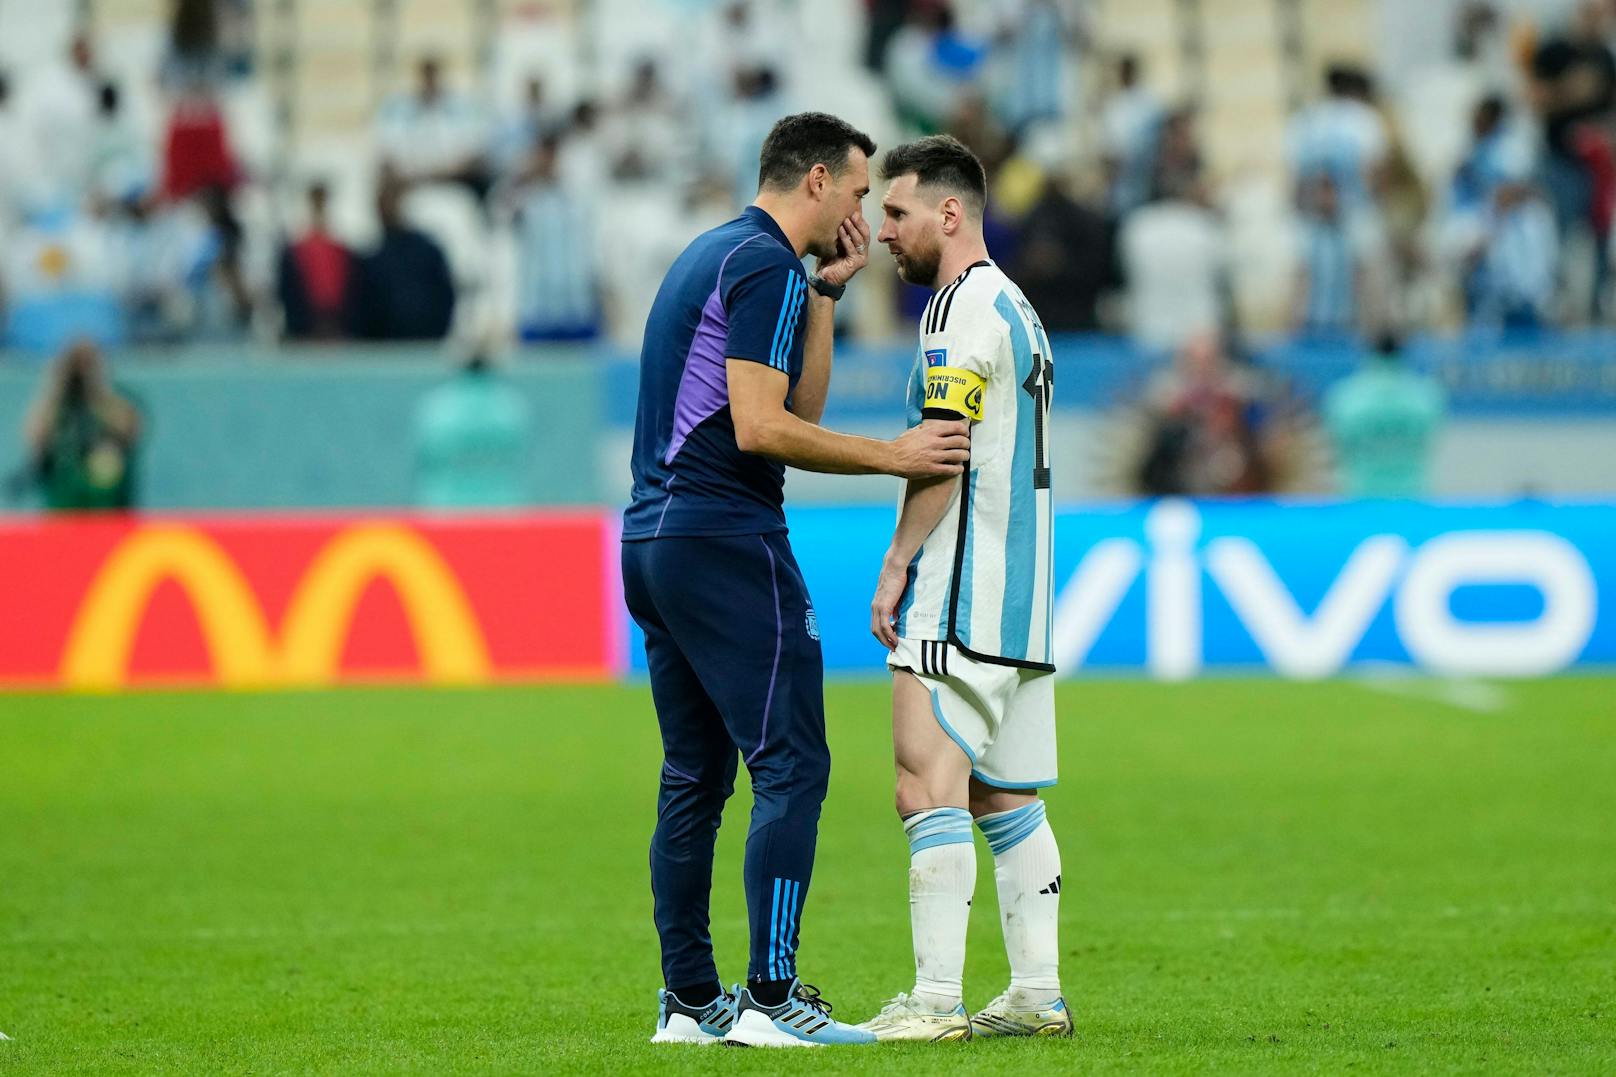 Messi deutet sein Ende an, aber Trainer hat Geheimplan